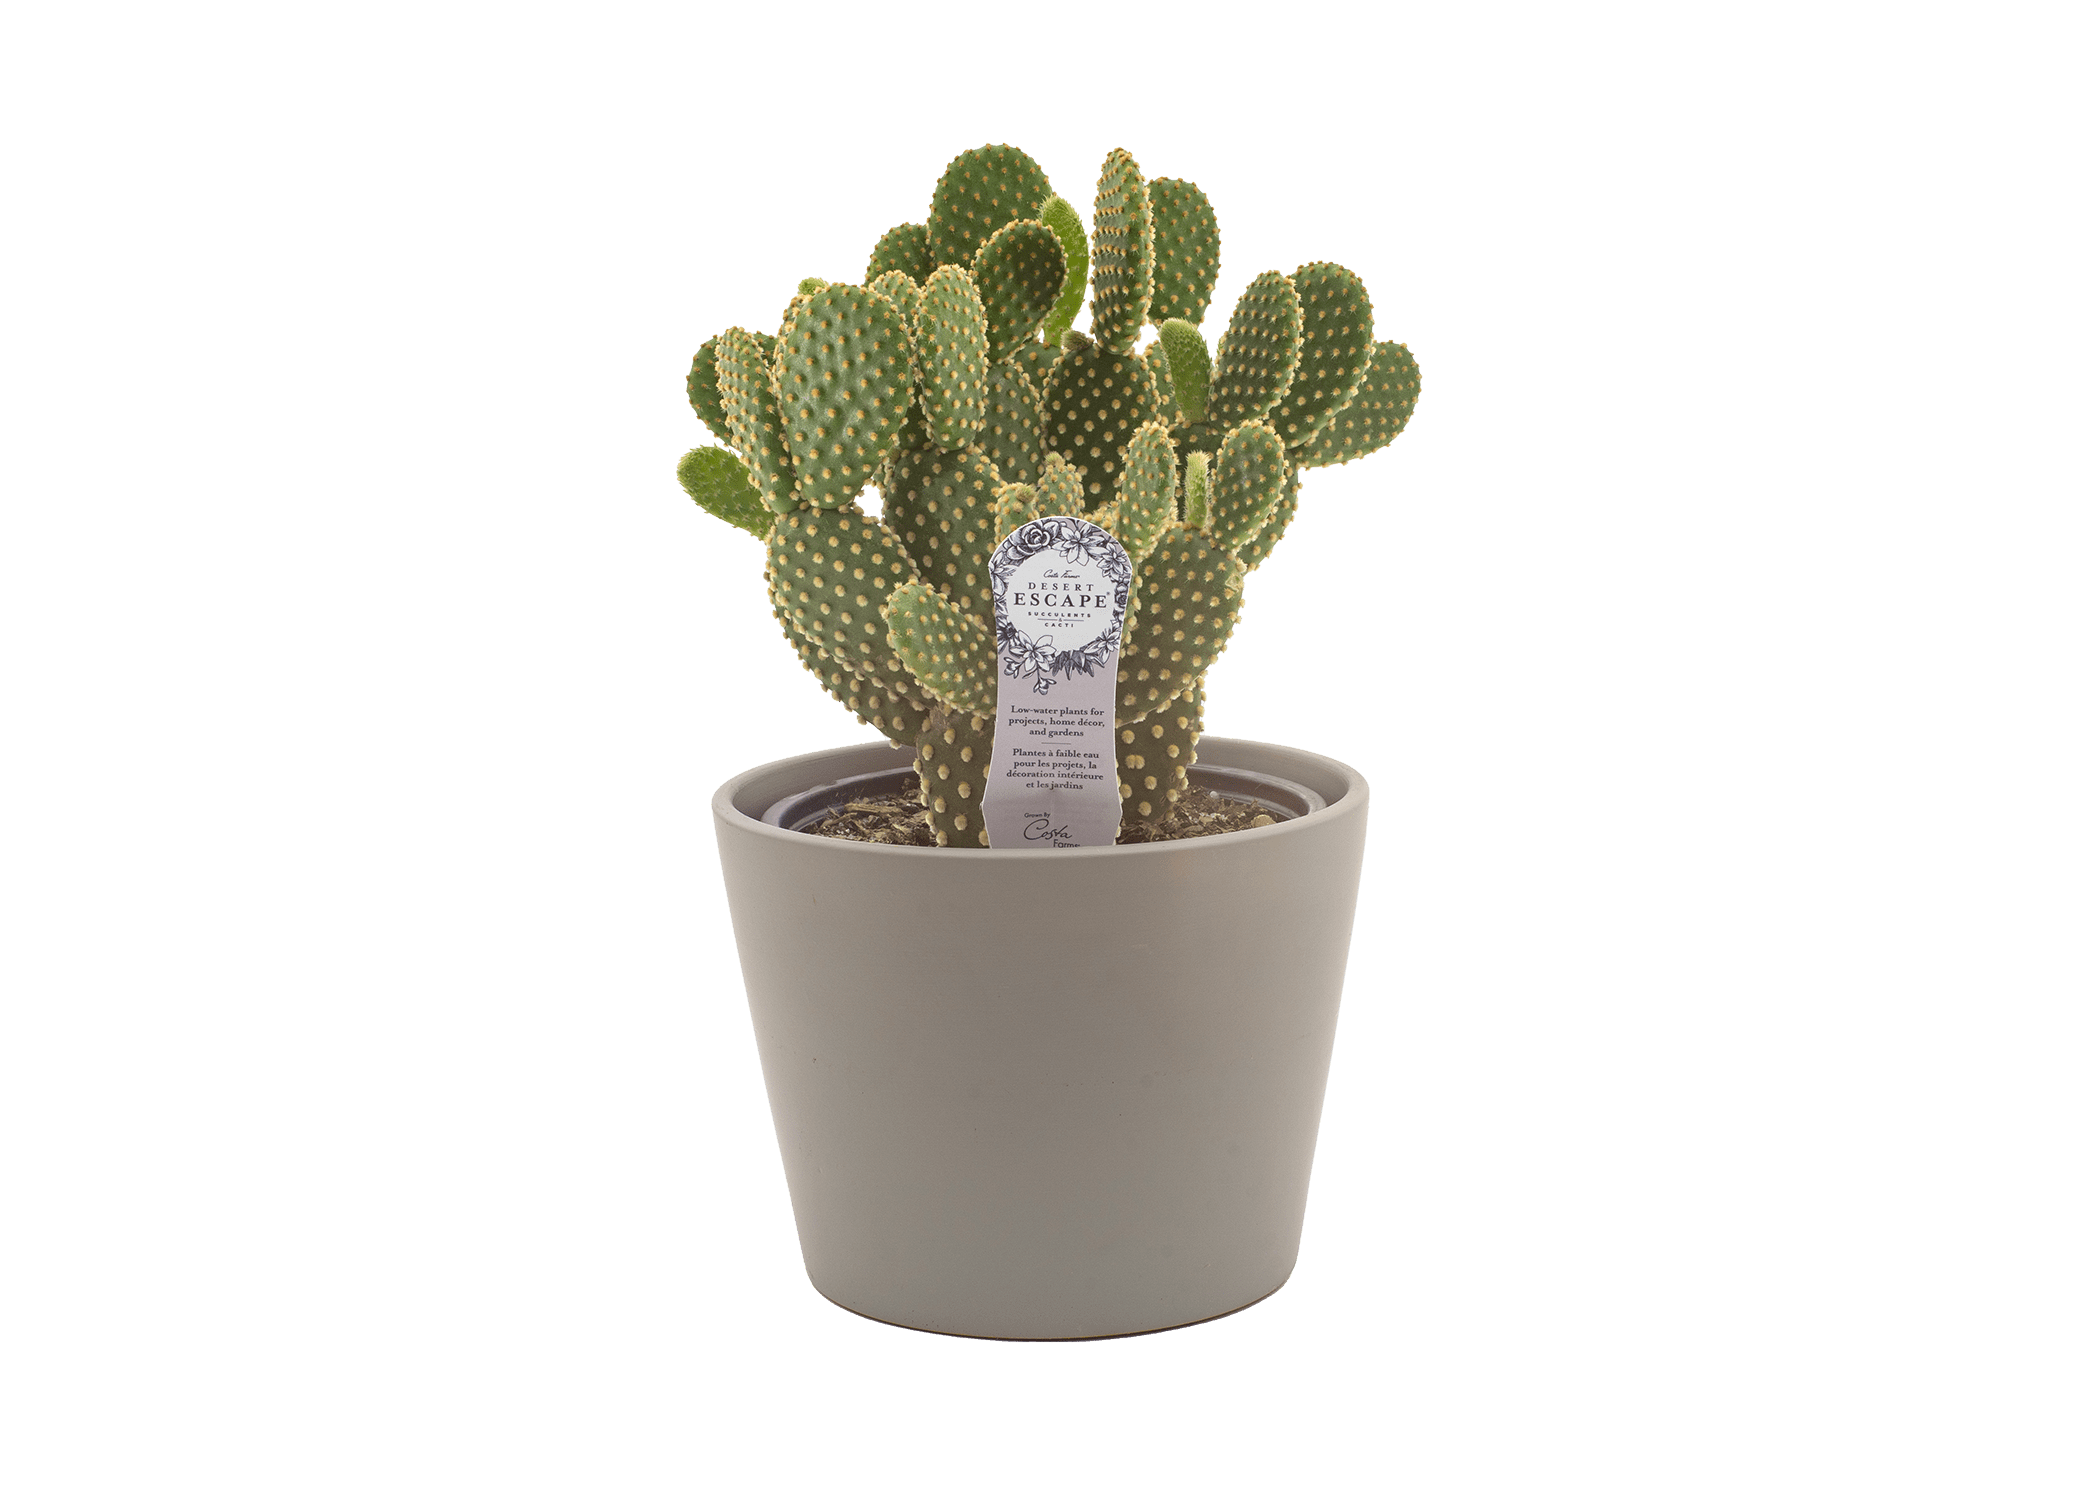 Costa Farms Desert Escape Live Indoor 6in. Cactus Plant in Ceramic